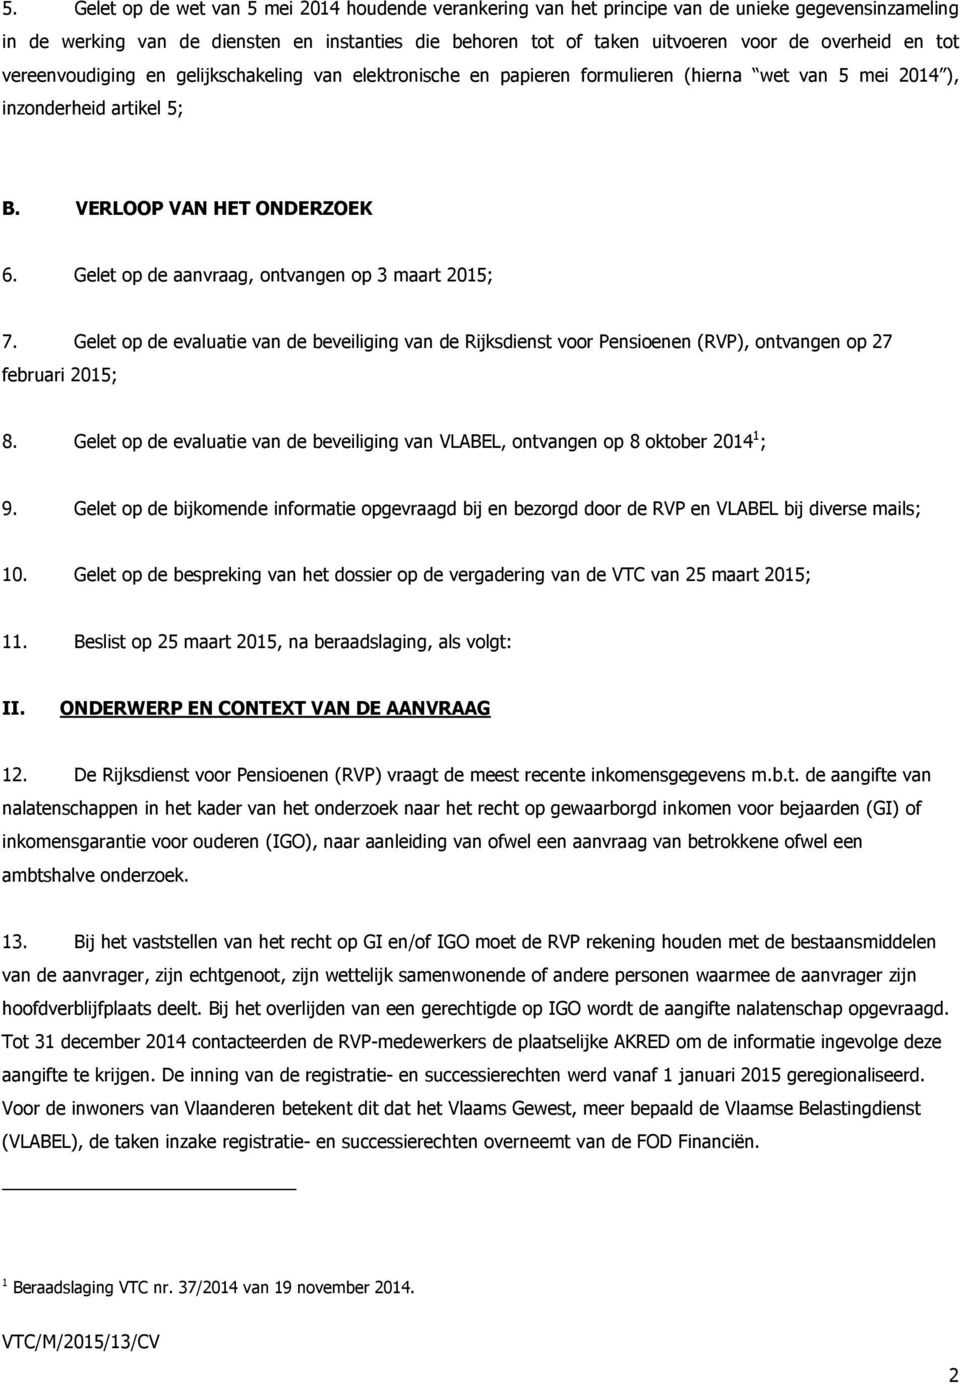 Gelet op de aanvraag, ontvangen op 3 maart 2015; 7. Gelet op de evaluatie van de beveiliging van de Rijksdienst voor Pensioenen (RVP), ontvangen op 27 februari 2015; 8.